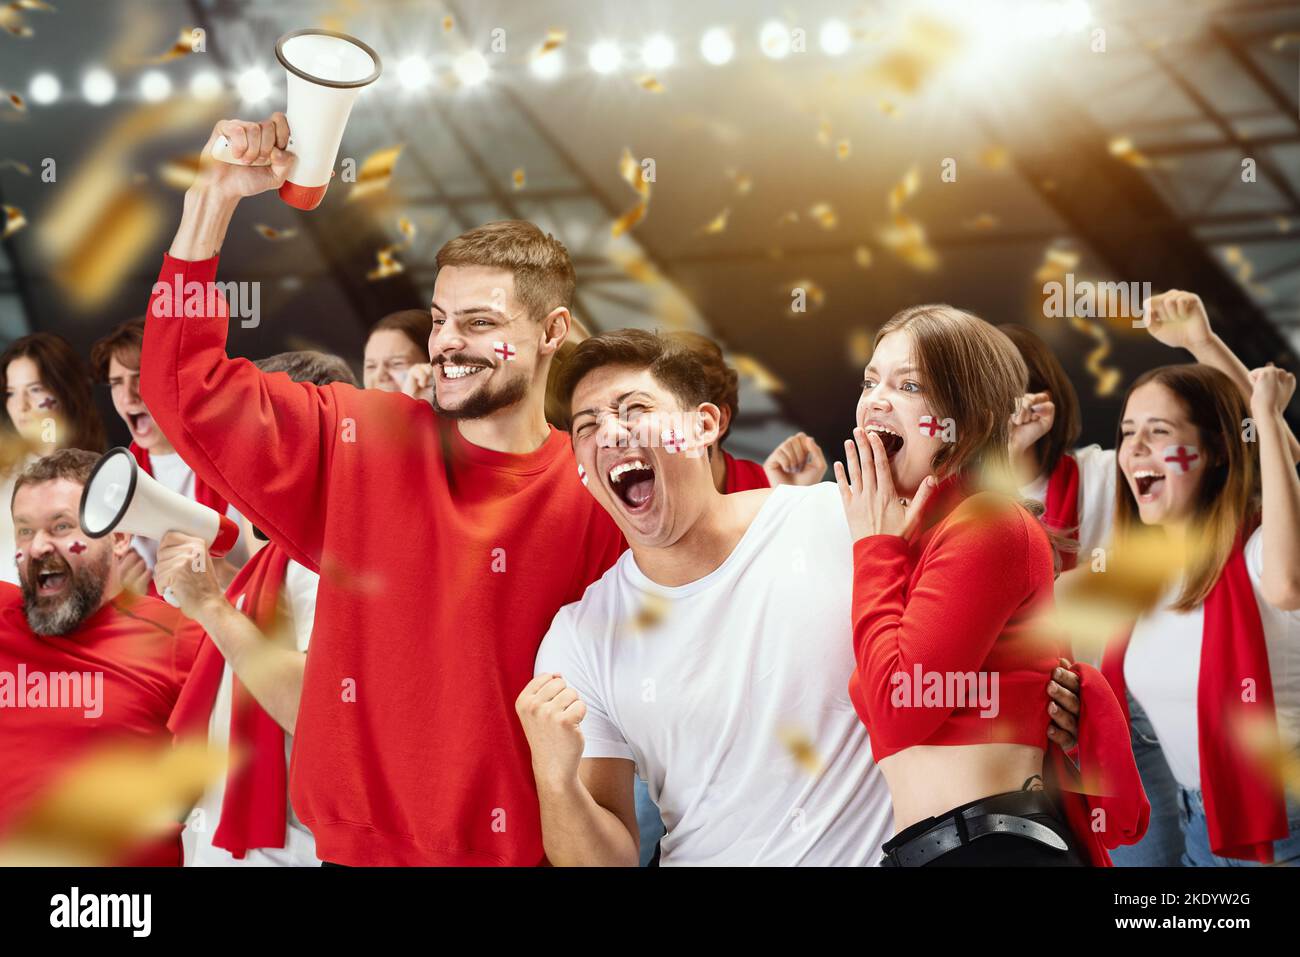 Un groupe de fans de football enthousiastes et enthousiastes qui applaudissent à la victoire de leur équipe sportive. Concept d'émotions, compétitions sportives mondiales Banque D'Images